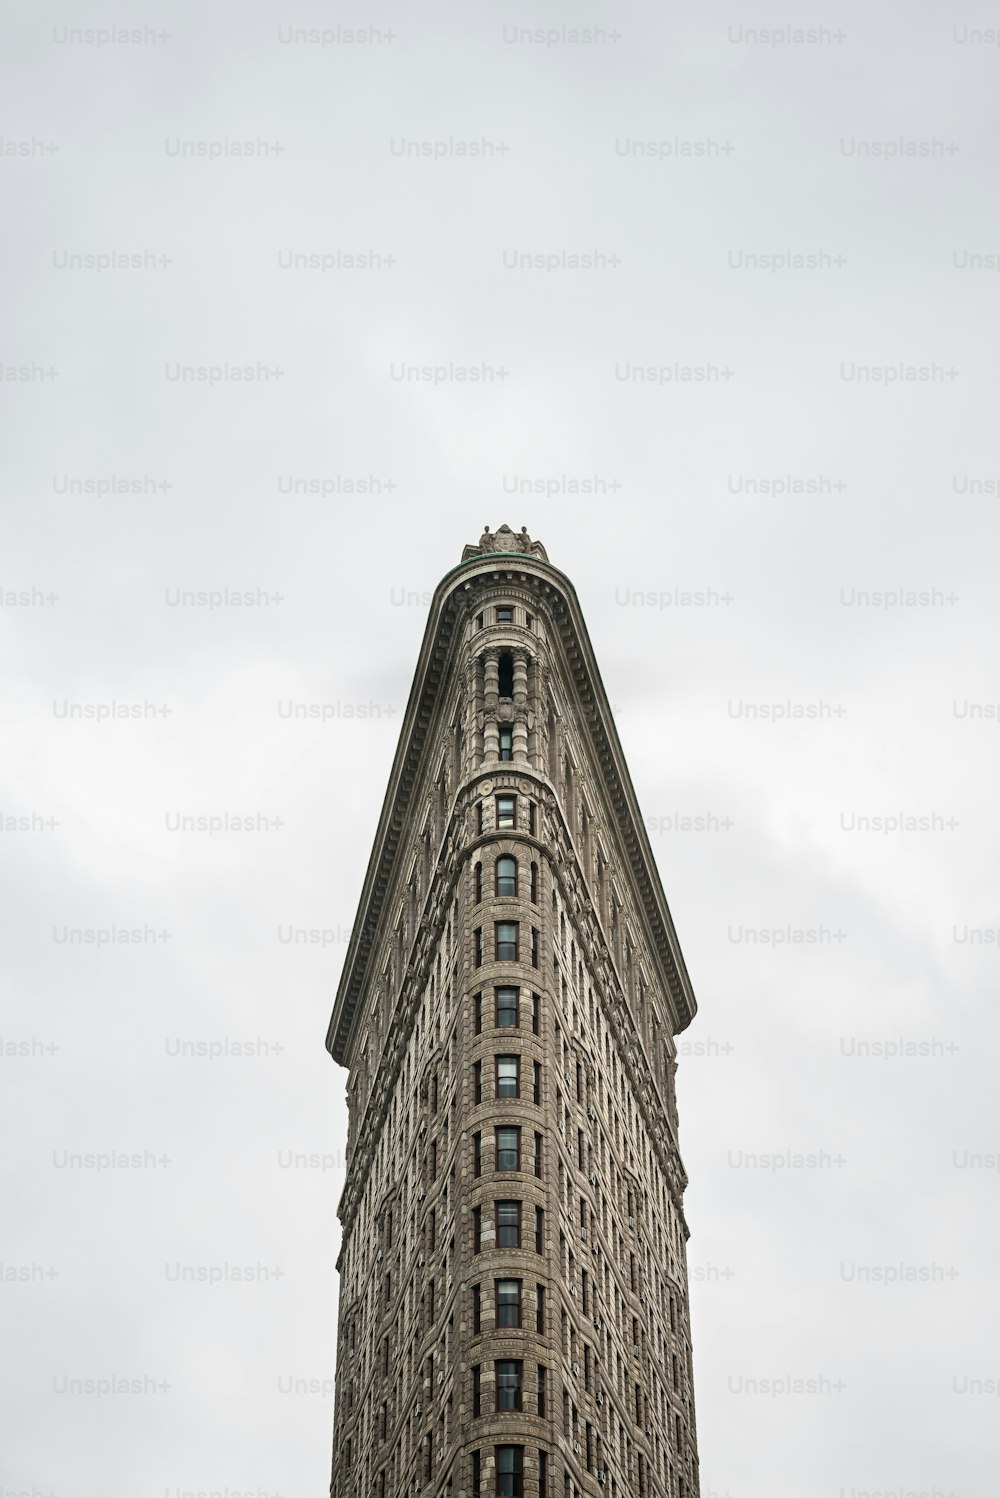 ニューヨークのフラットアイアンビルの正面図。当初はフラービルとして知られていましたが、1902年にシカゴのダニエル・バーナムの設計で完成し、当時は市内で最も高いビルの1つとなり、14番街の北に2つしかない超高層ビルの1つになりました。